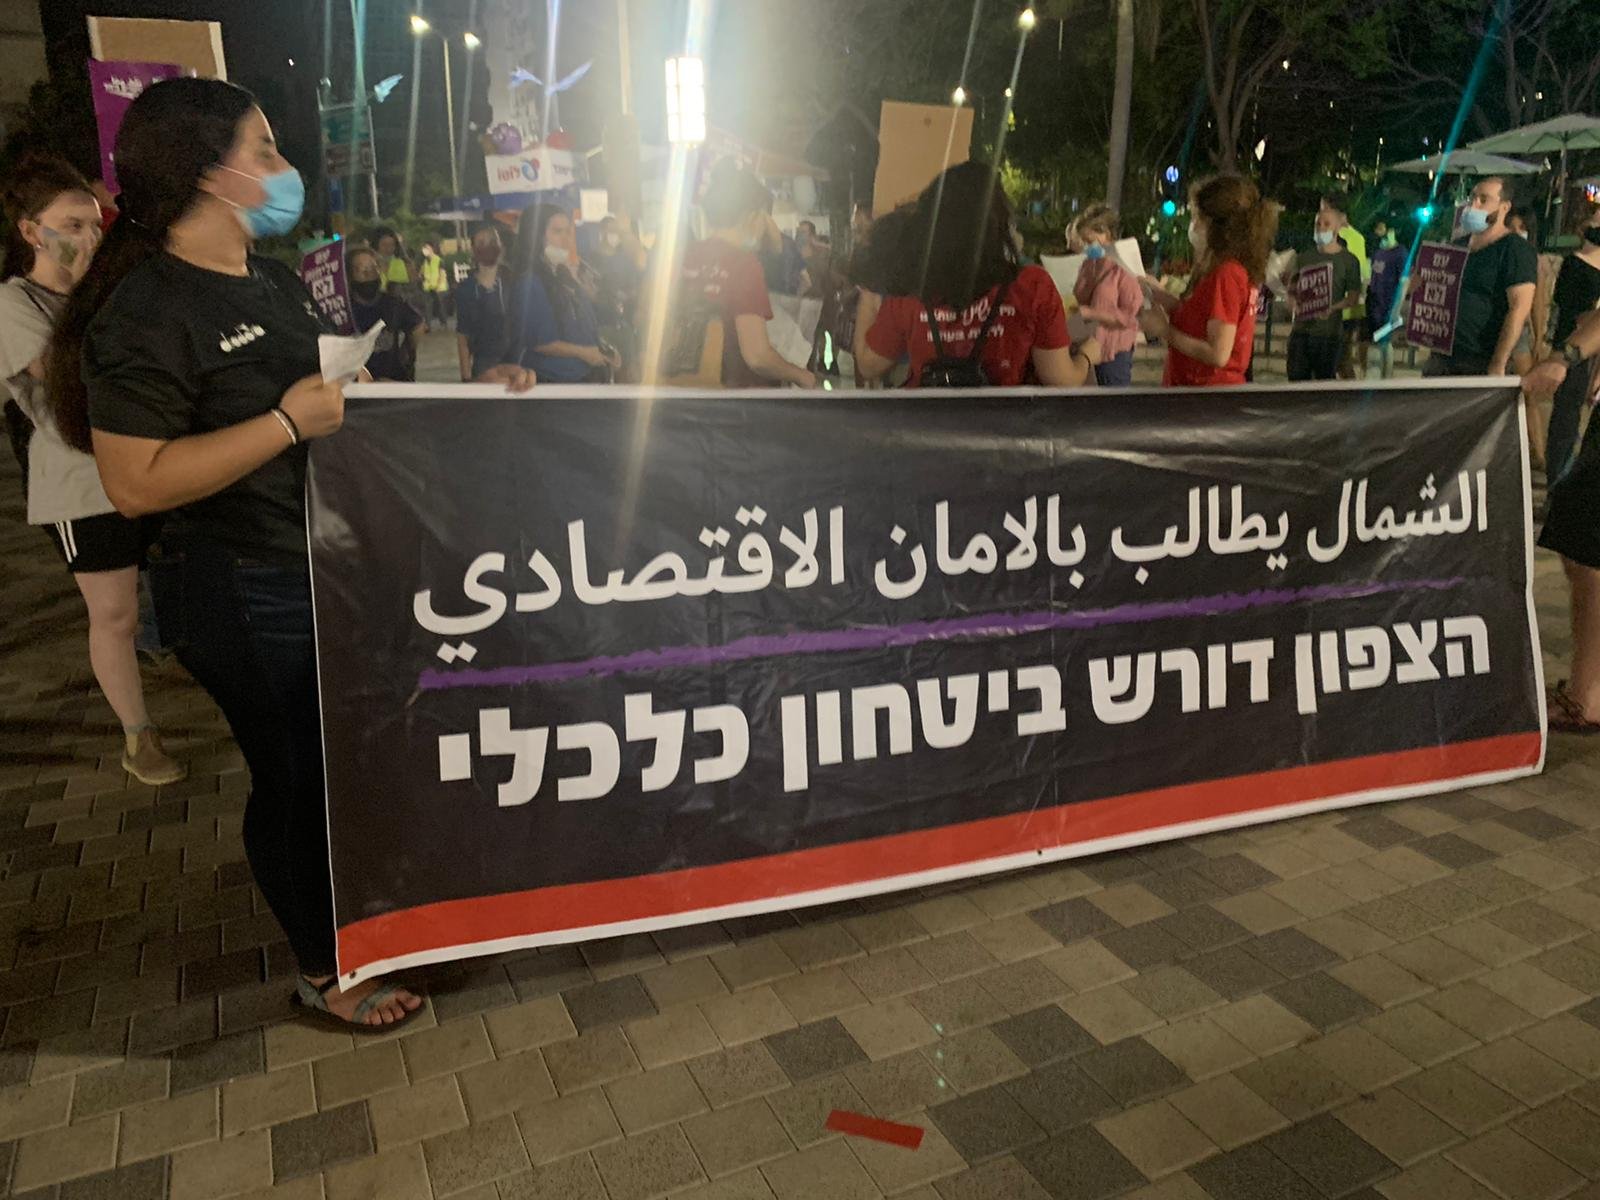 حيفا: مظاهرة صاخبة ضد حكومة اسرائيل للمطالبة بشبكة امان اقتصادية-7